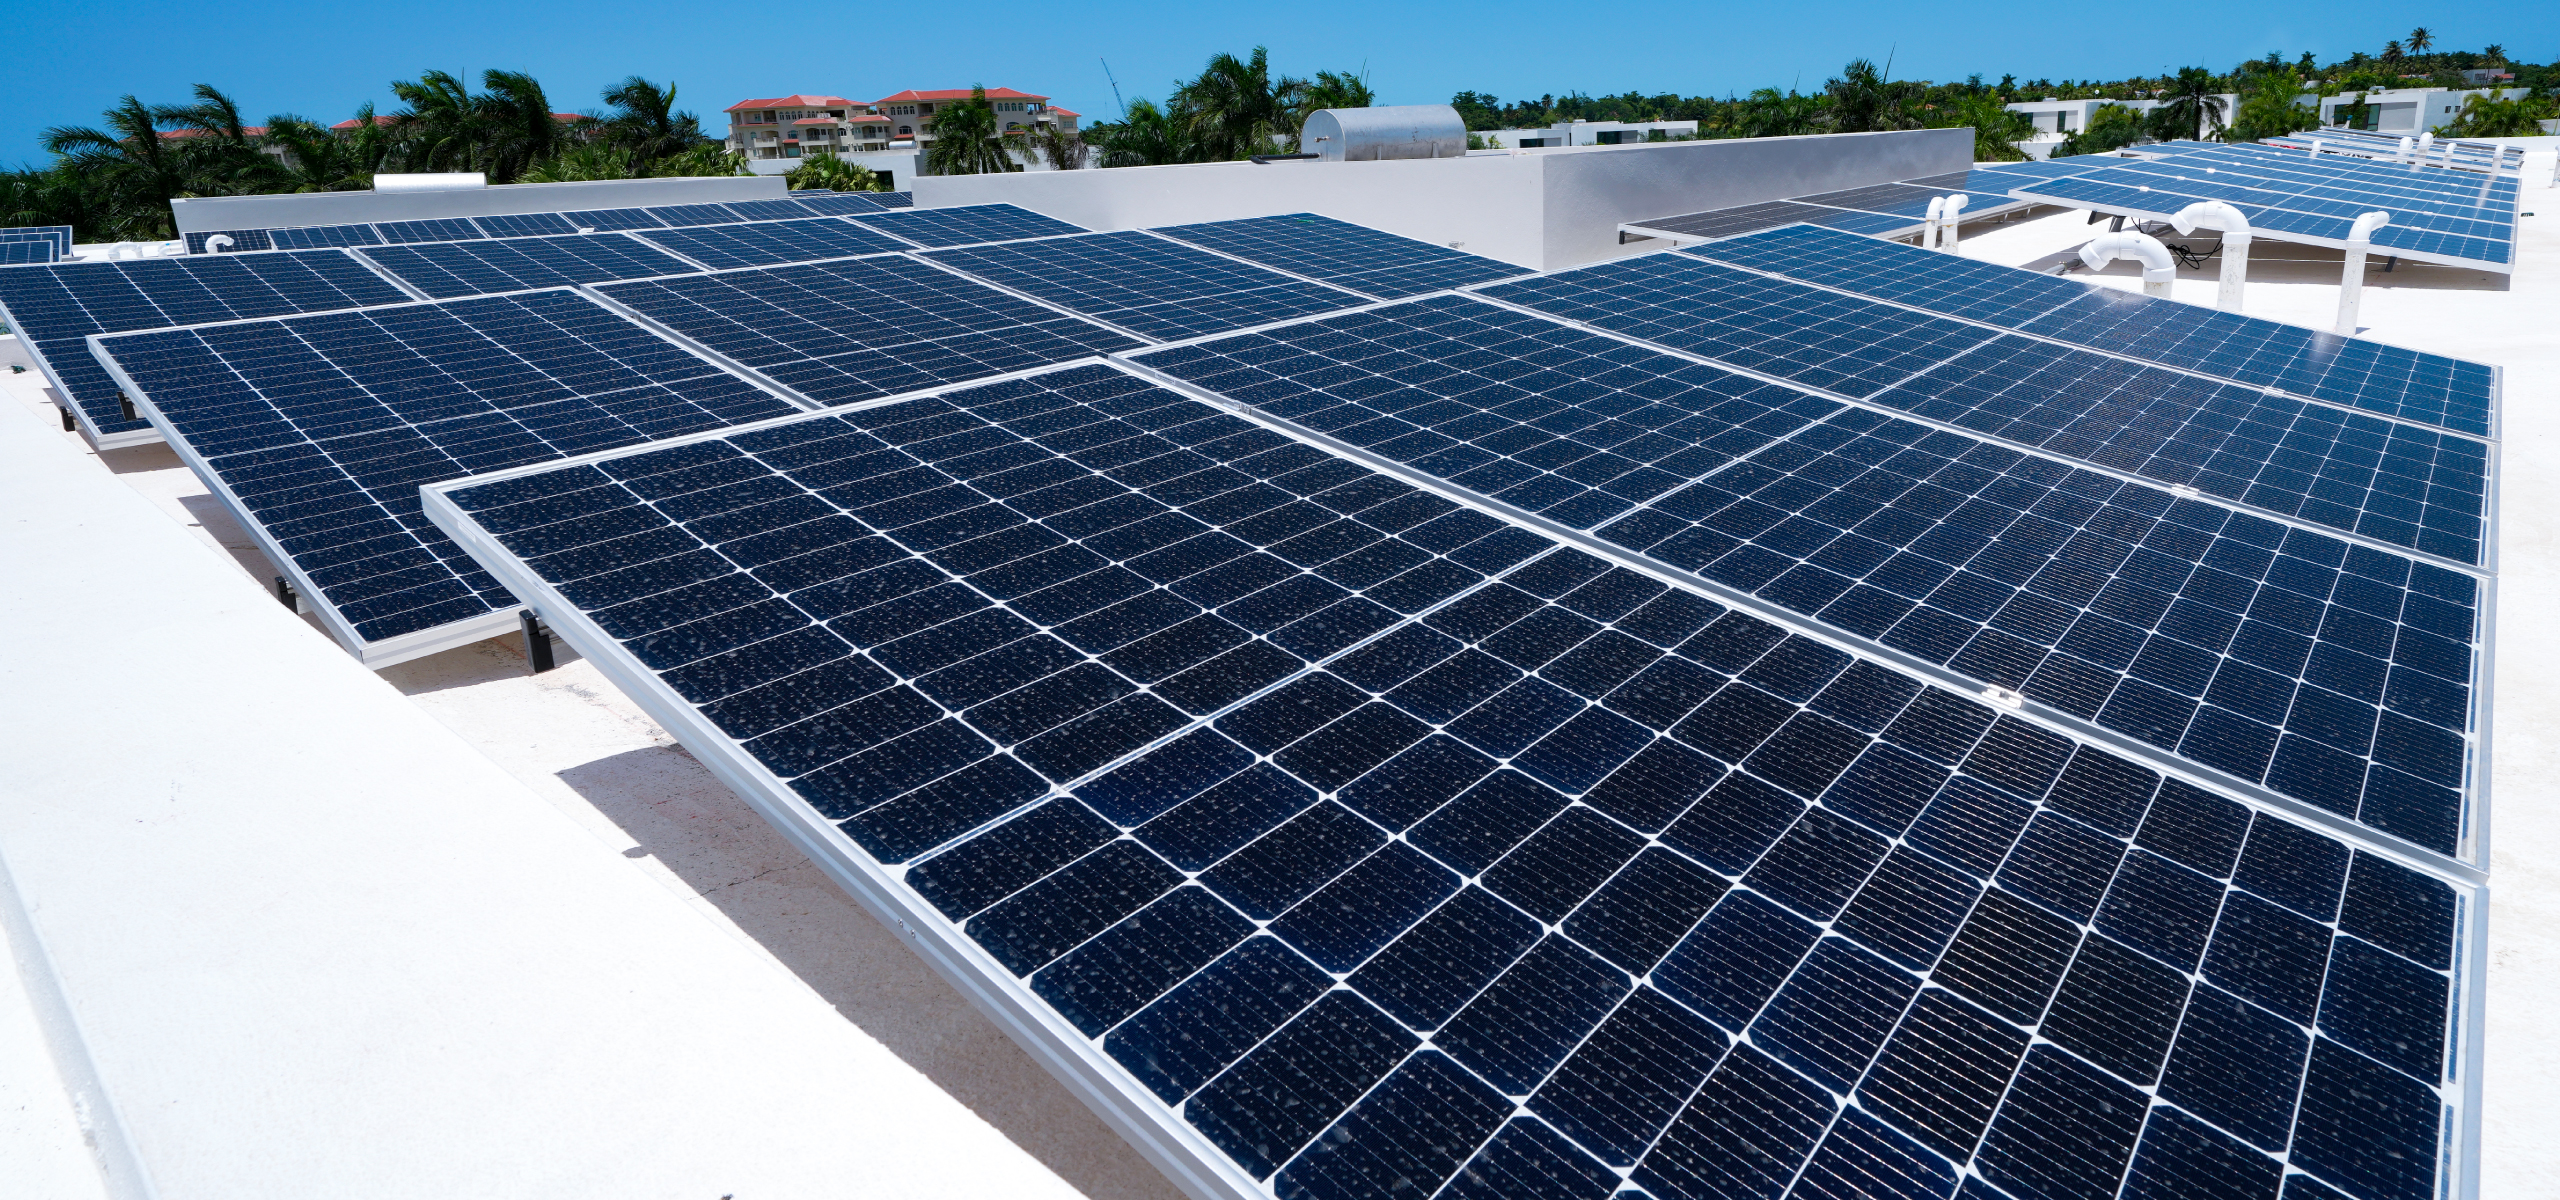 Paneles solares en un techo residencial aumentando el valor de la vivienda